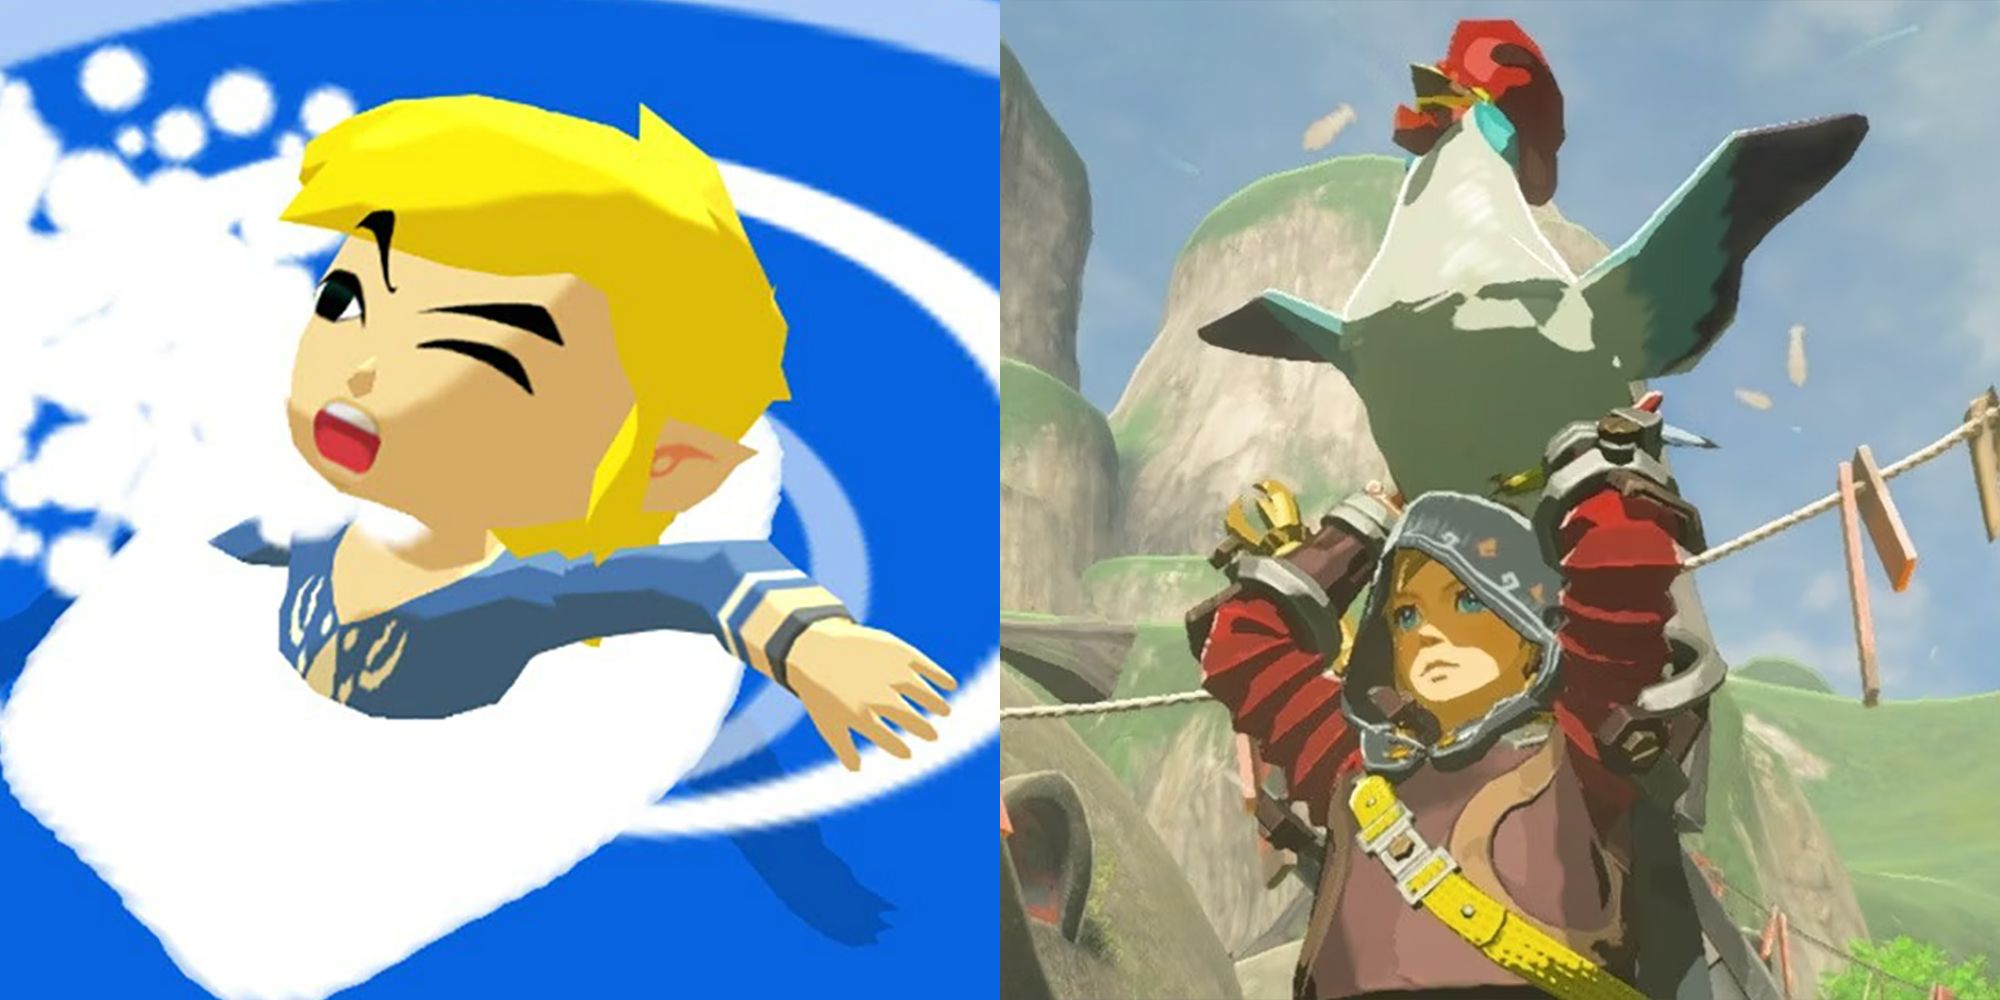 Link's Biggest Weaknesses